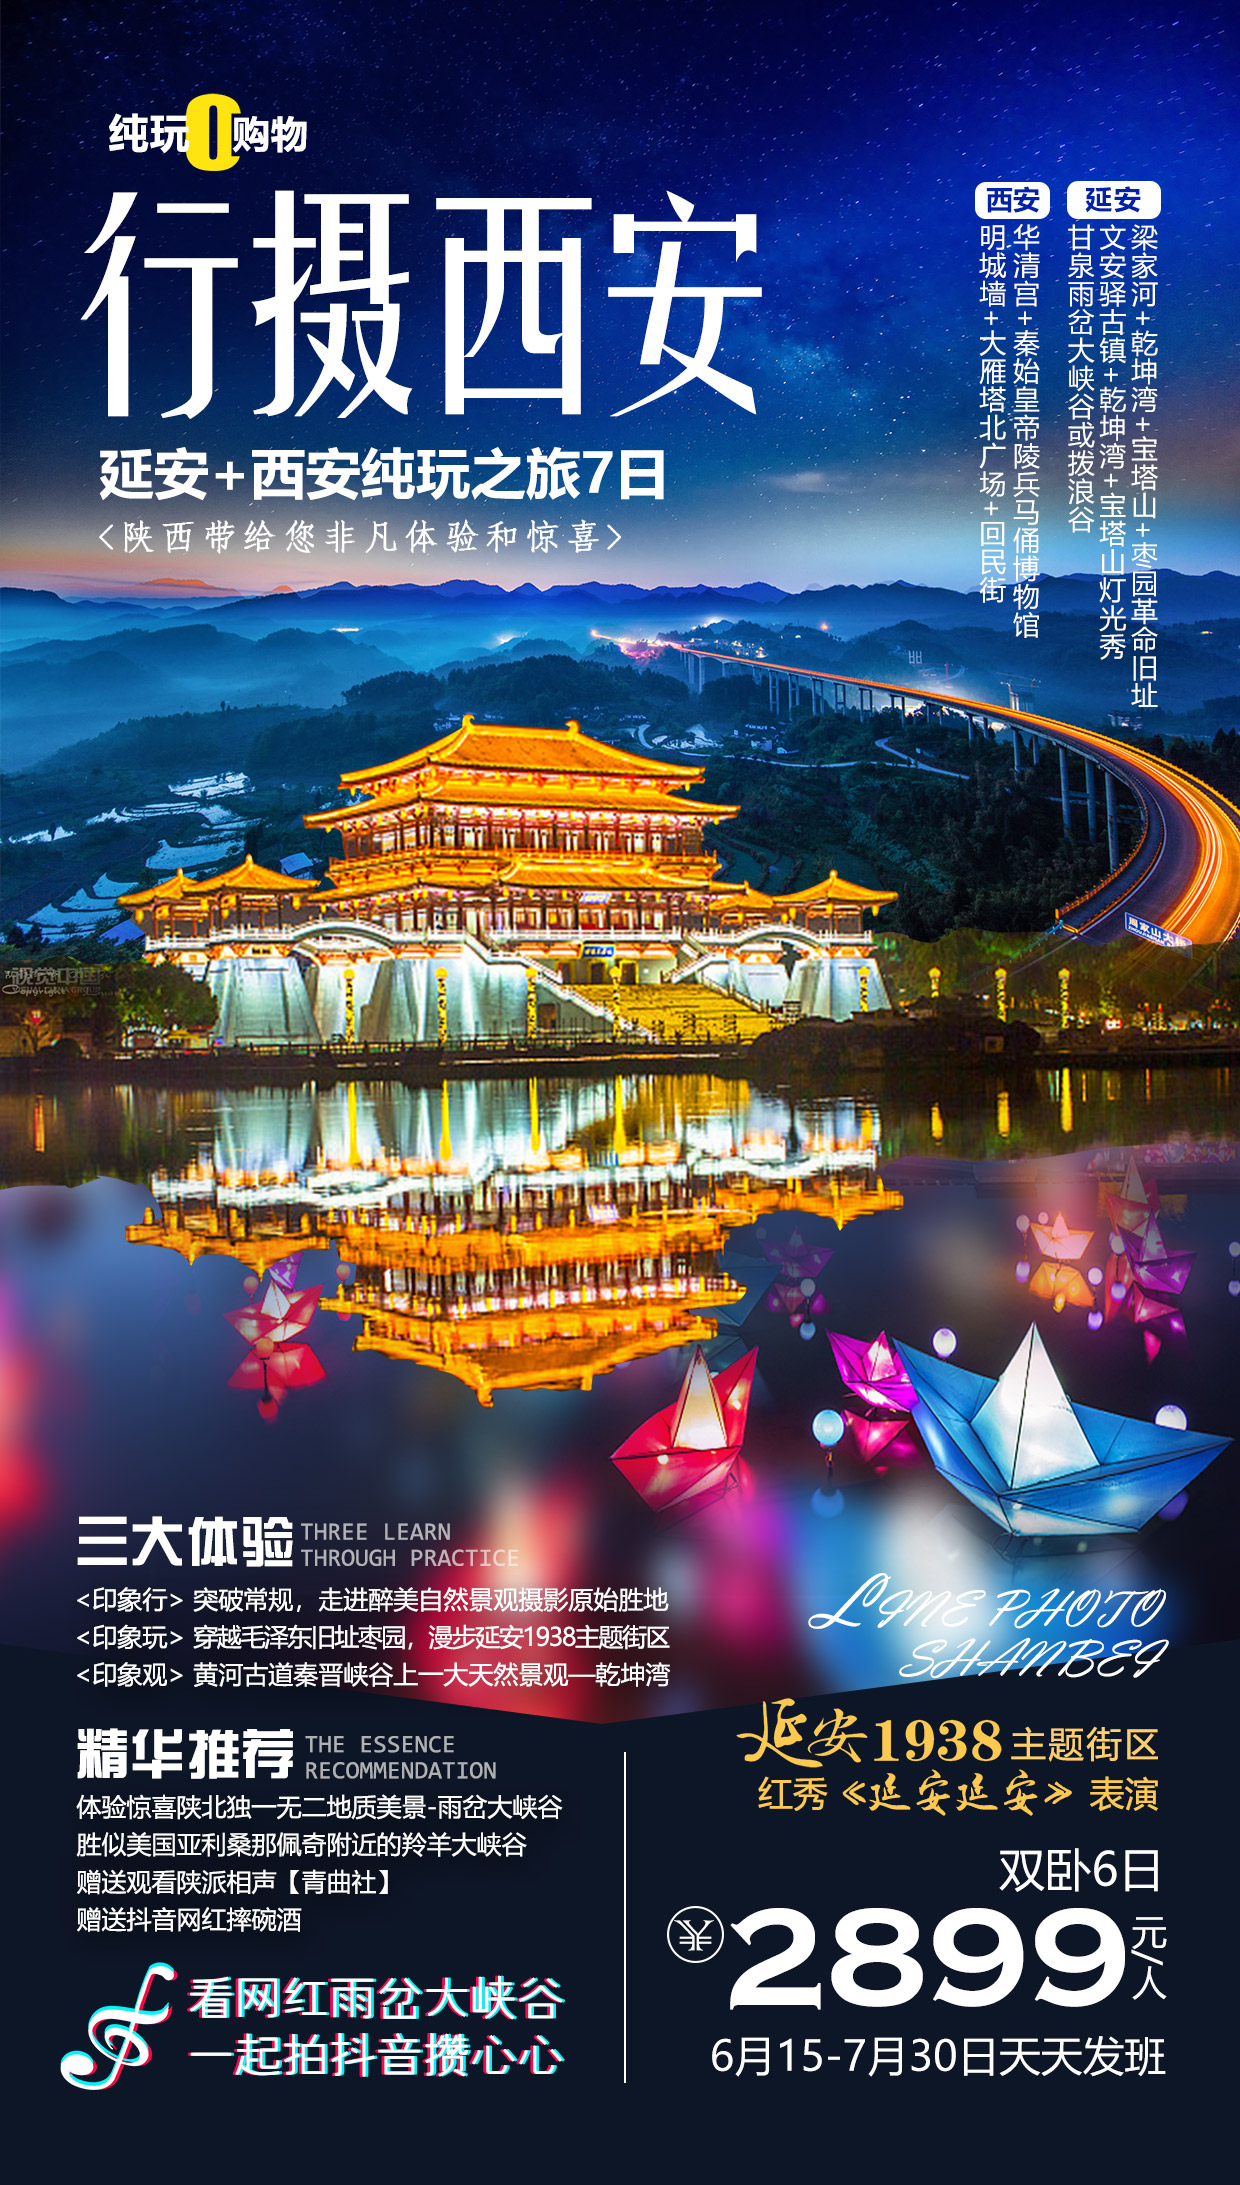 红色陕北旅游海报psd广告设计素材海报模板免费下载